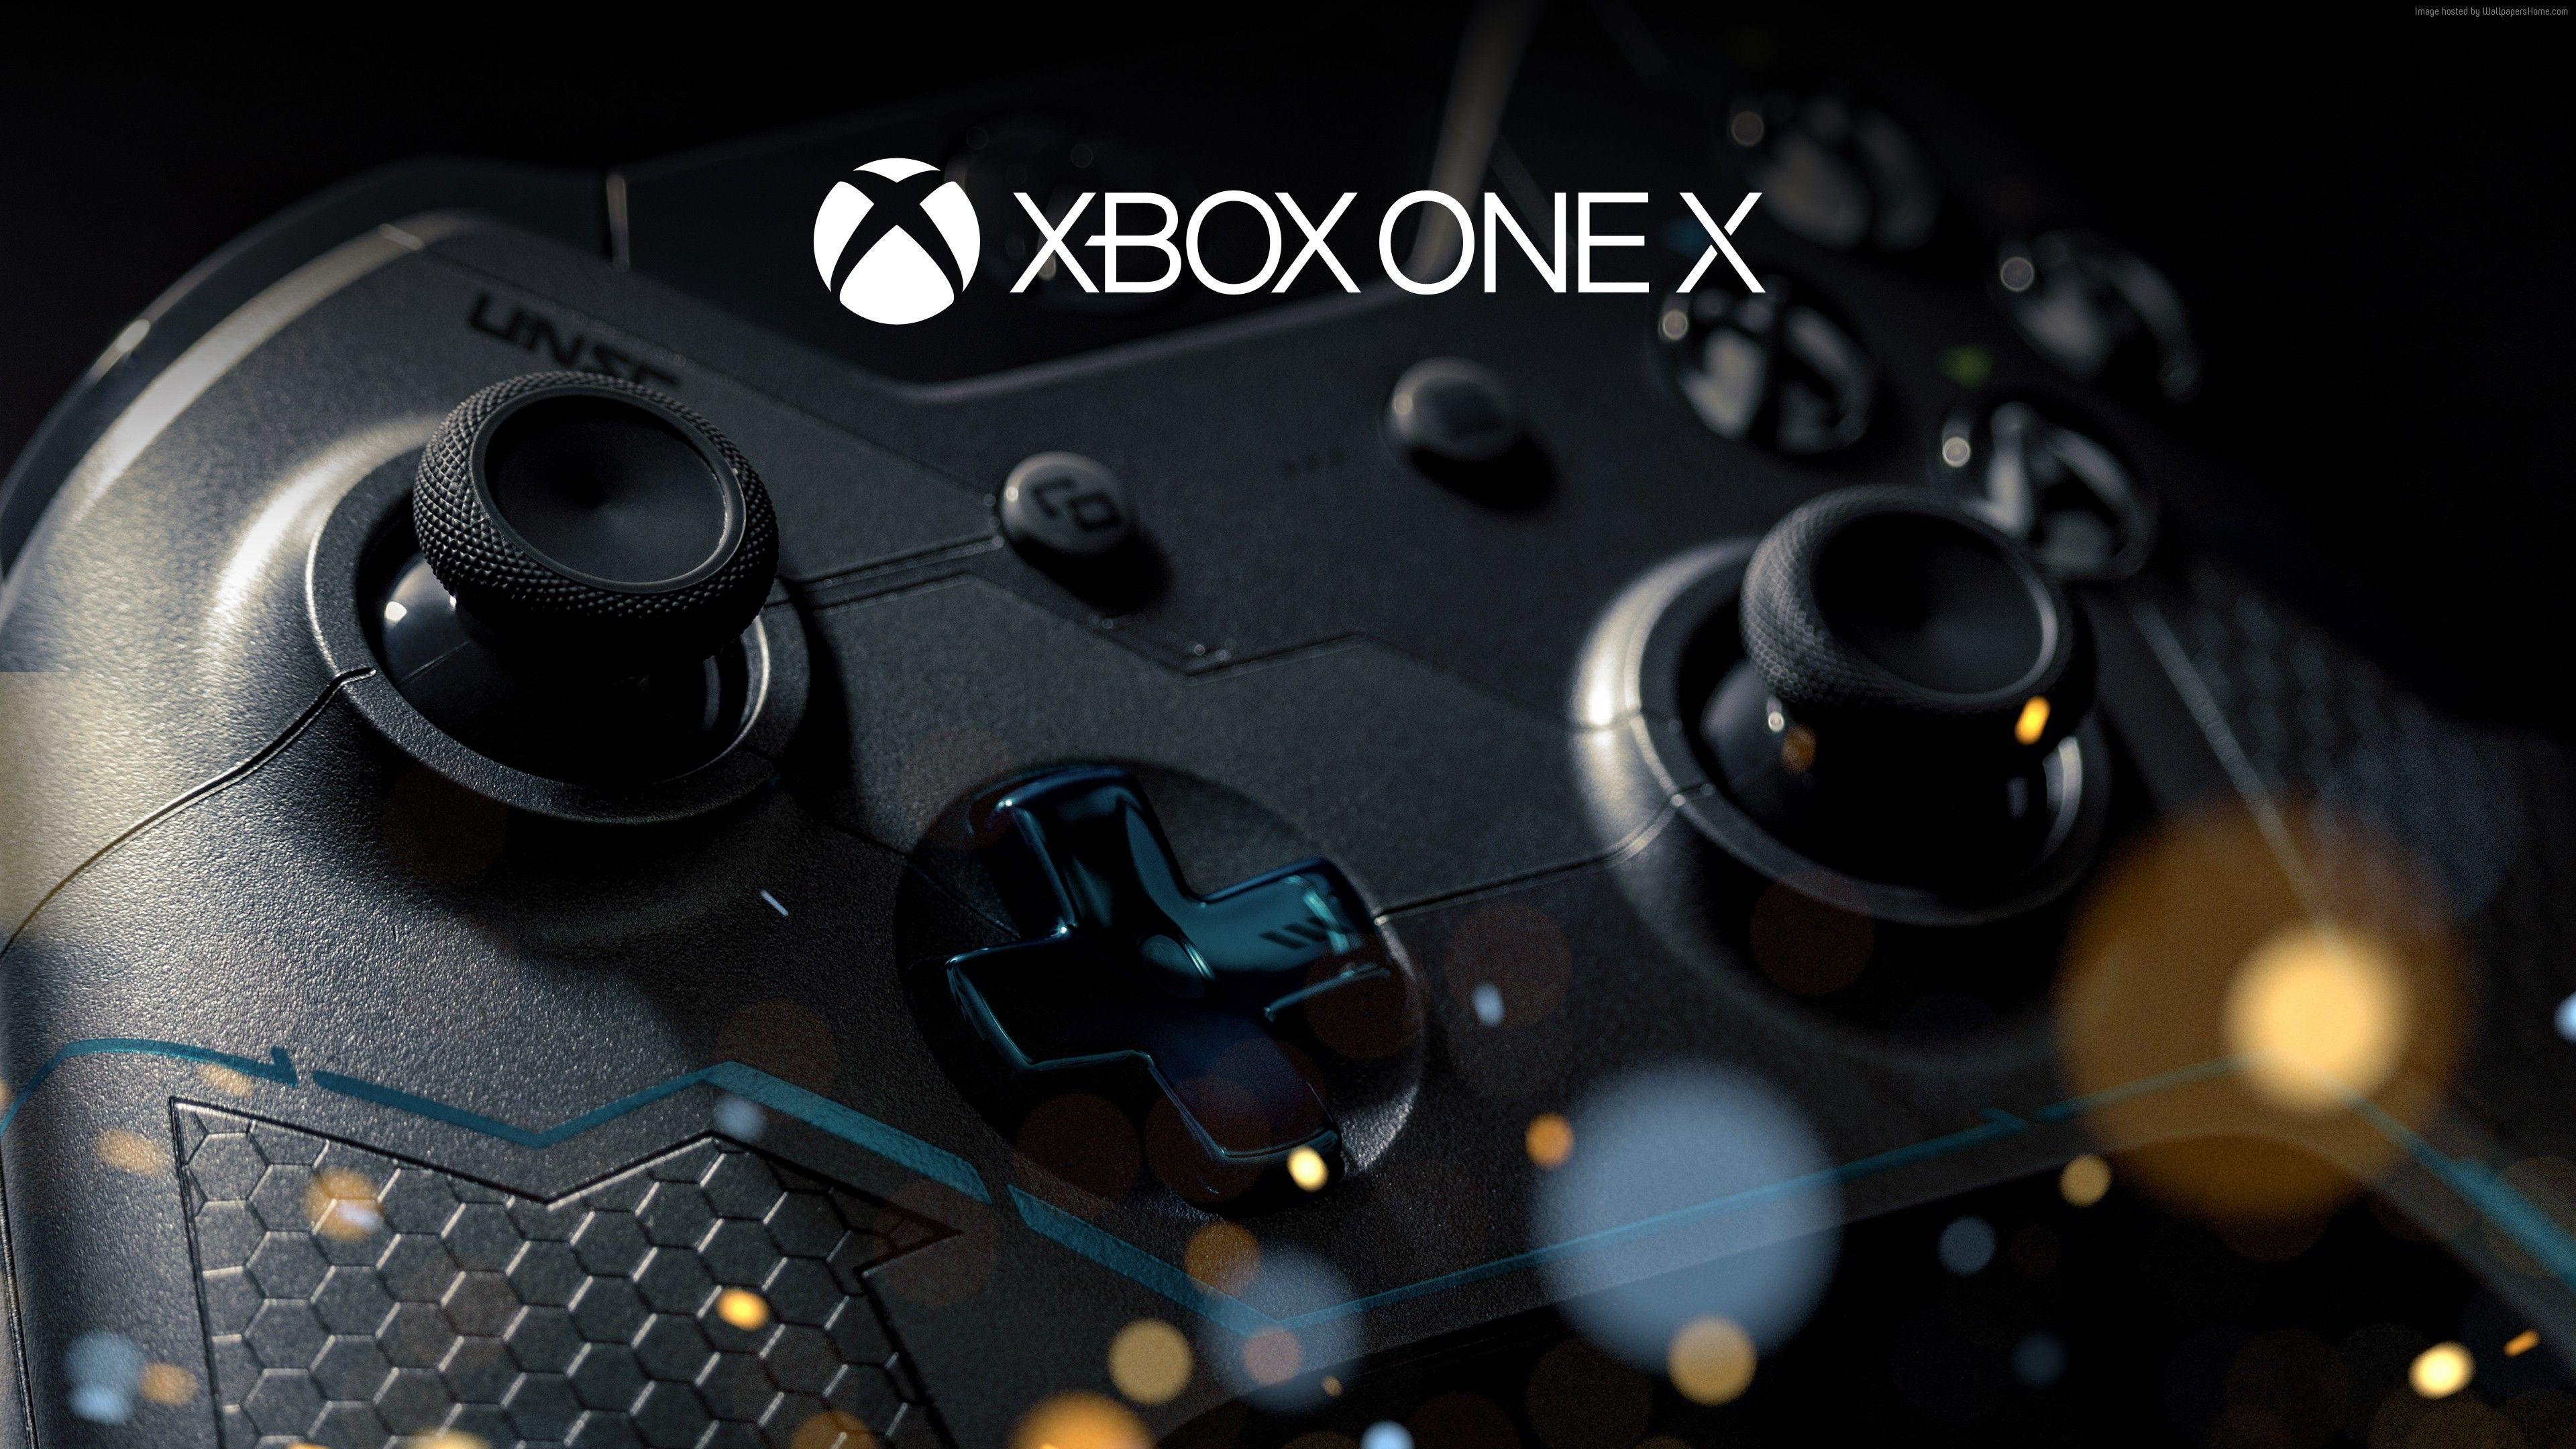 3840x2160 Hình nền Xbox One X, 4k, E3 2017, Công nghệ cao